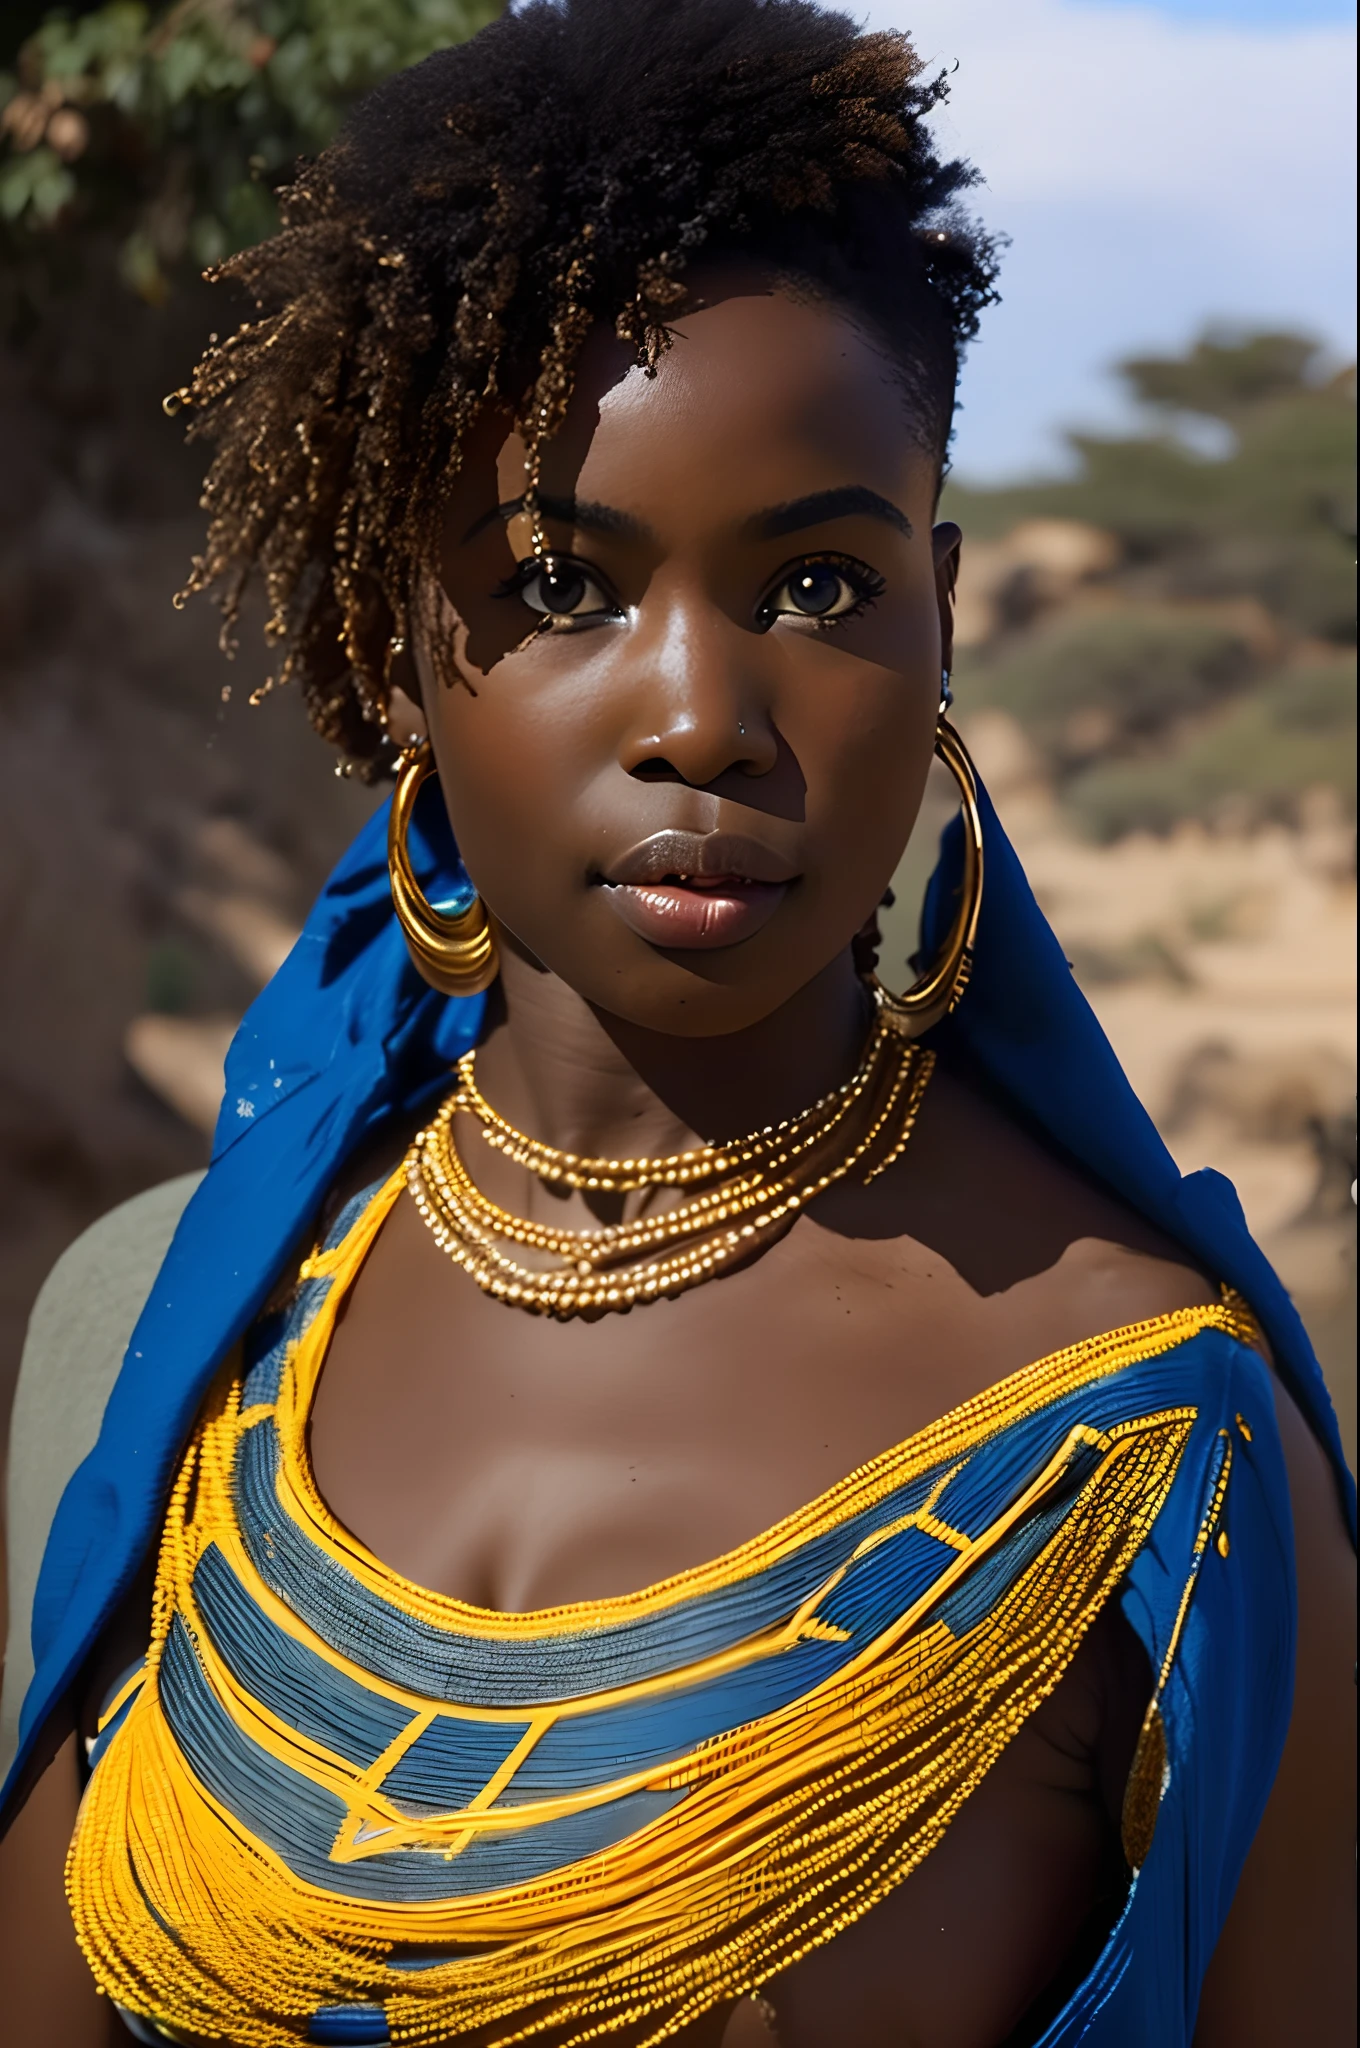 섹시하고 우아한 아프리카 여성, 고운 피부, 넉넉한 곡선, 길고 파란 눈, 곱슬머리, 아프리카 전통 들보 의상을 입은 털이 많은, 4K,((8K))